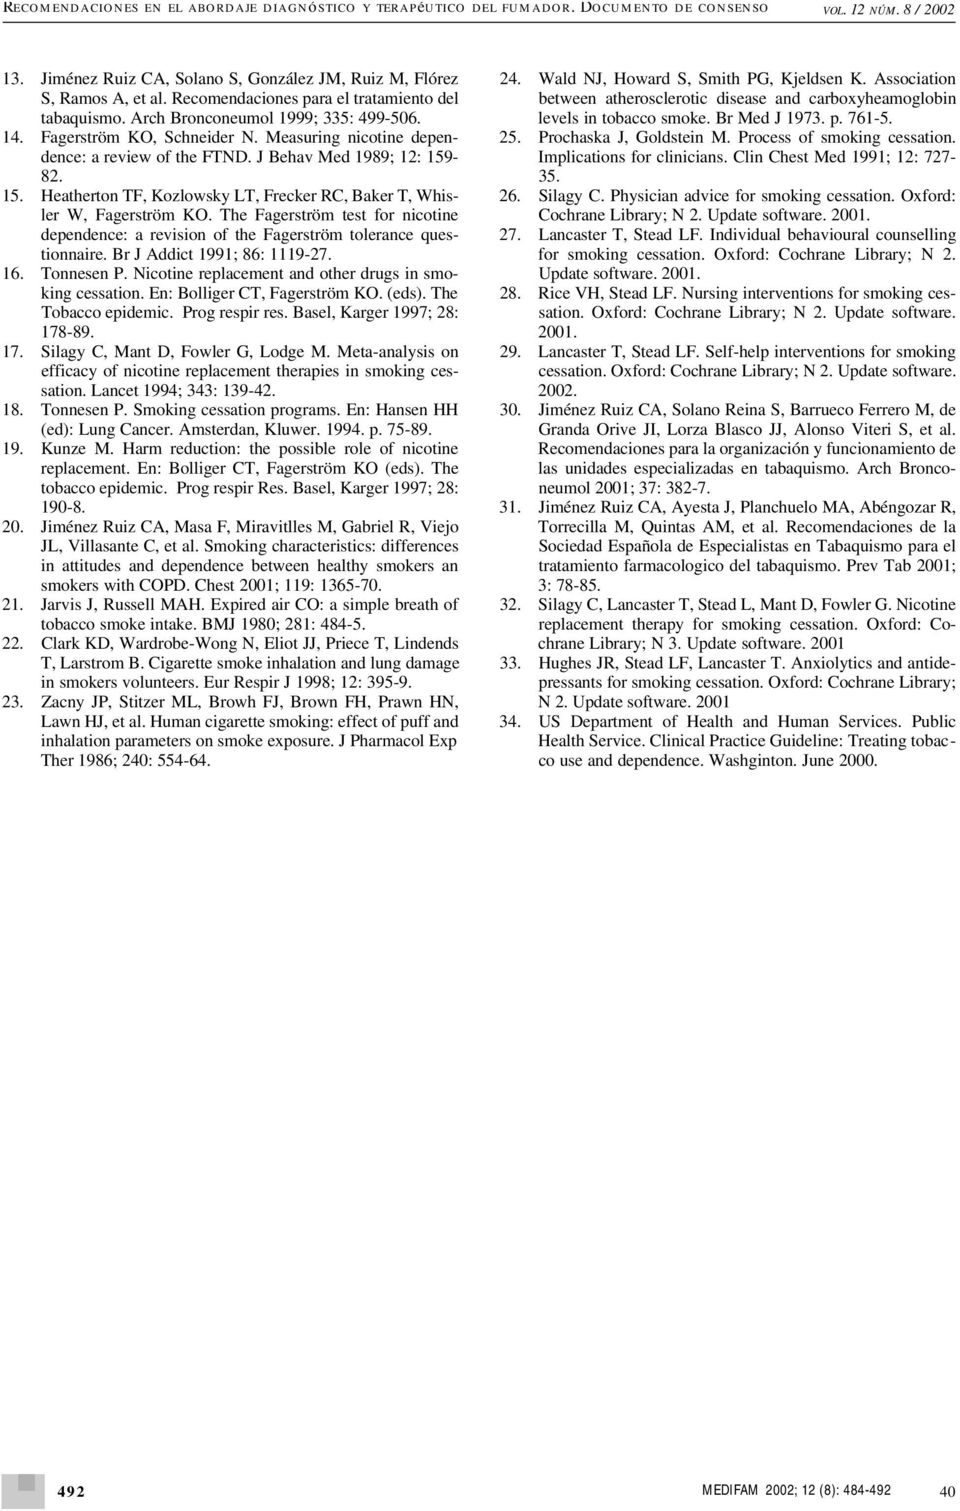 J Behav Med 1989; 12: 159-82. 15. Heatherton TF, Kozlowsky LT, Frecker RC, Baker T, Whisler W, Fagerström KO.